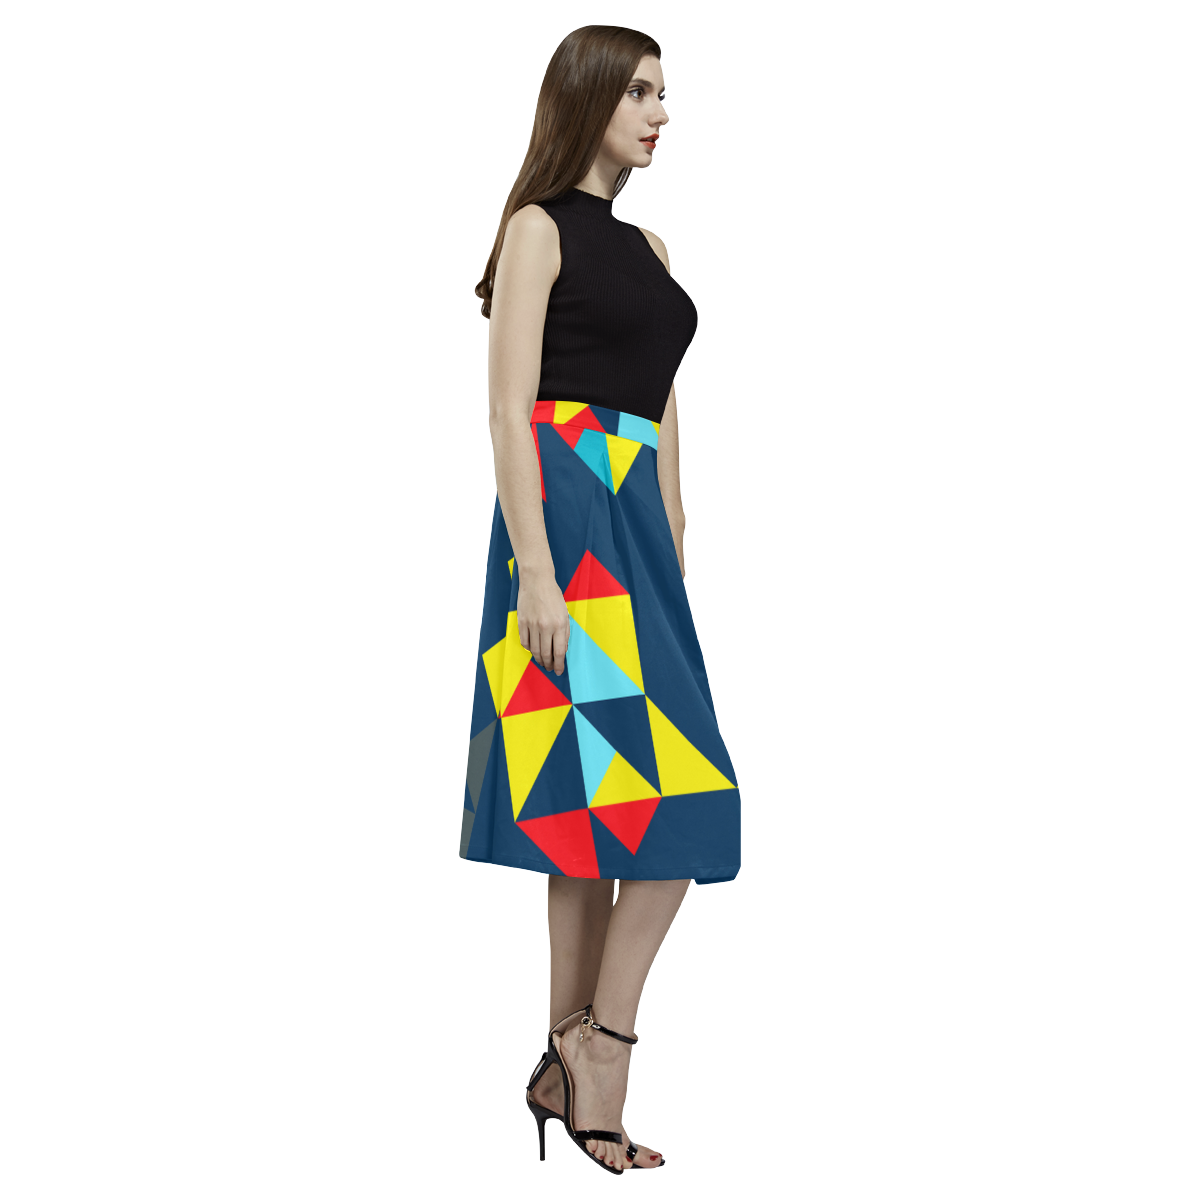 Shapes on a blue background Aoede Crepe Skirt (Model D16)